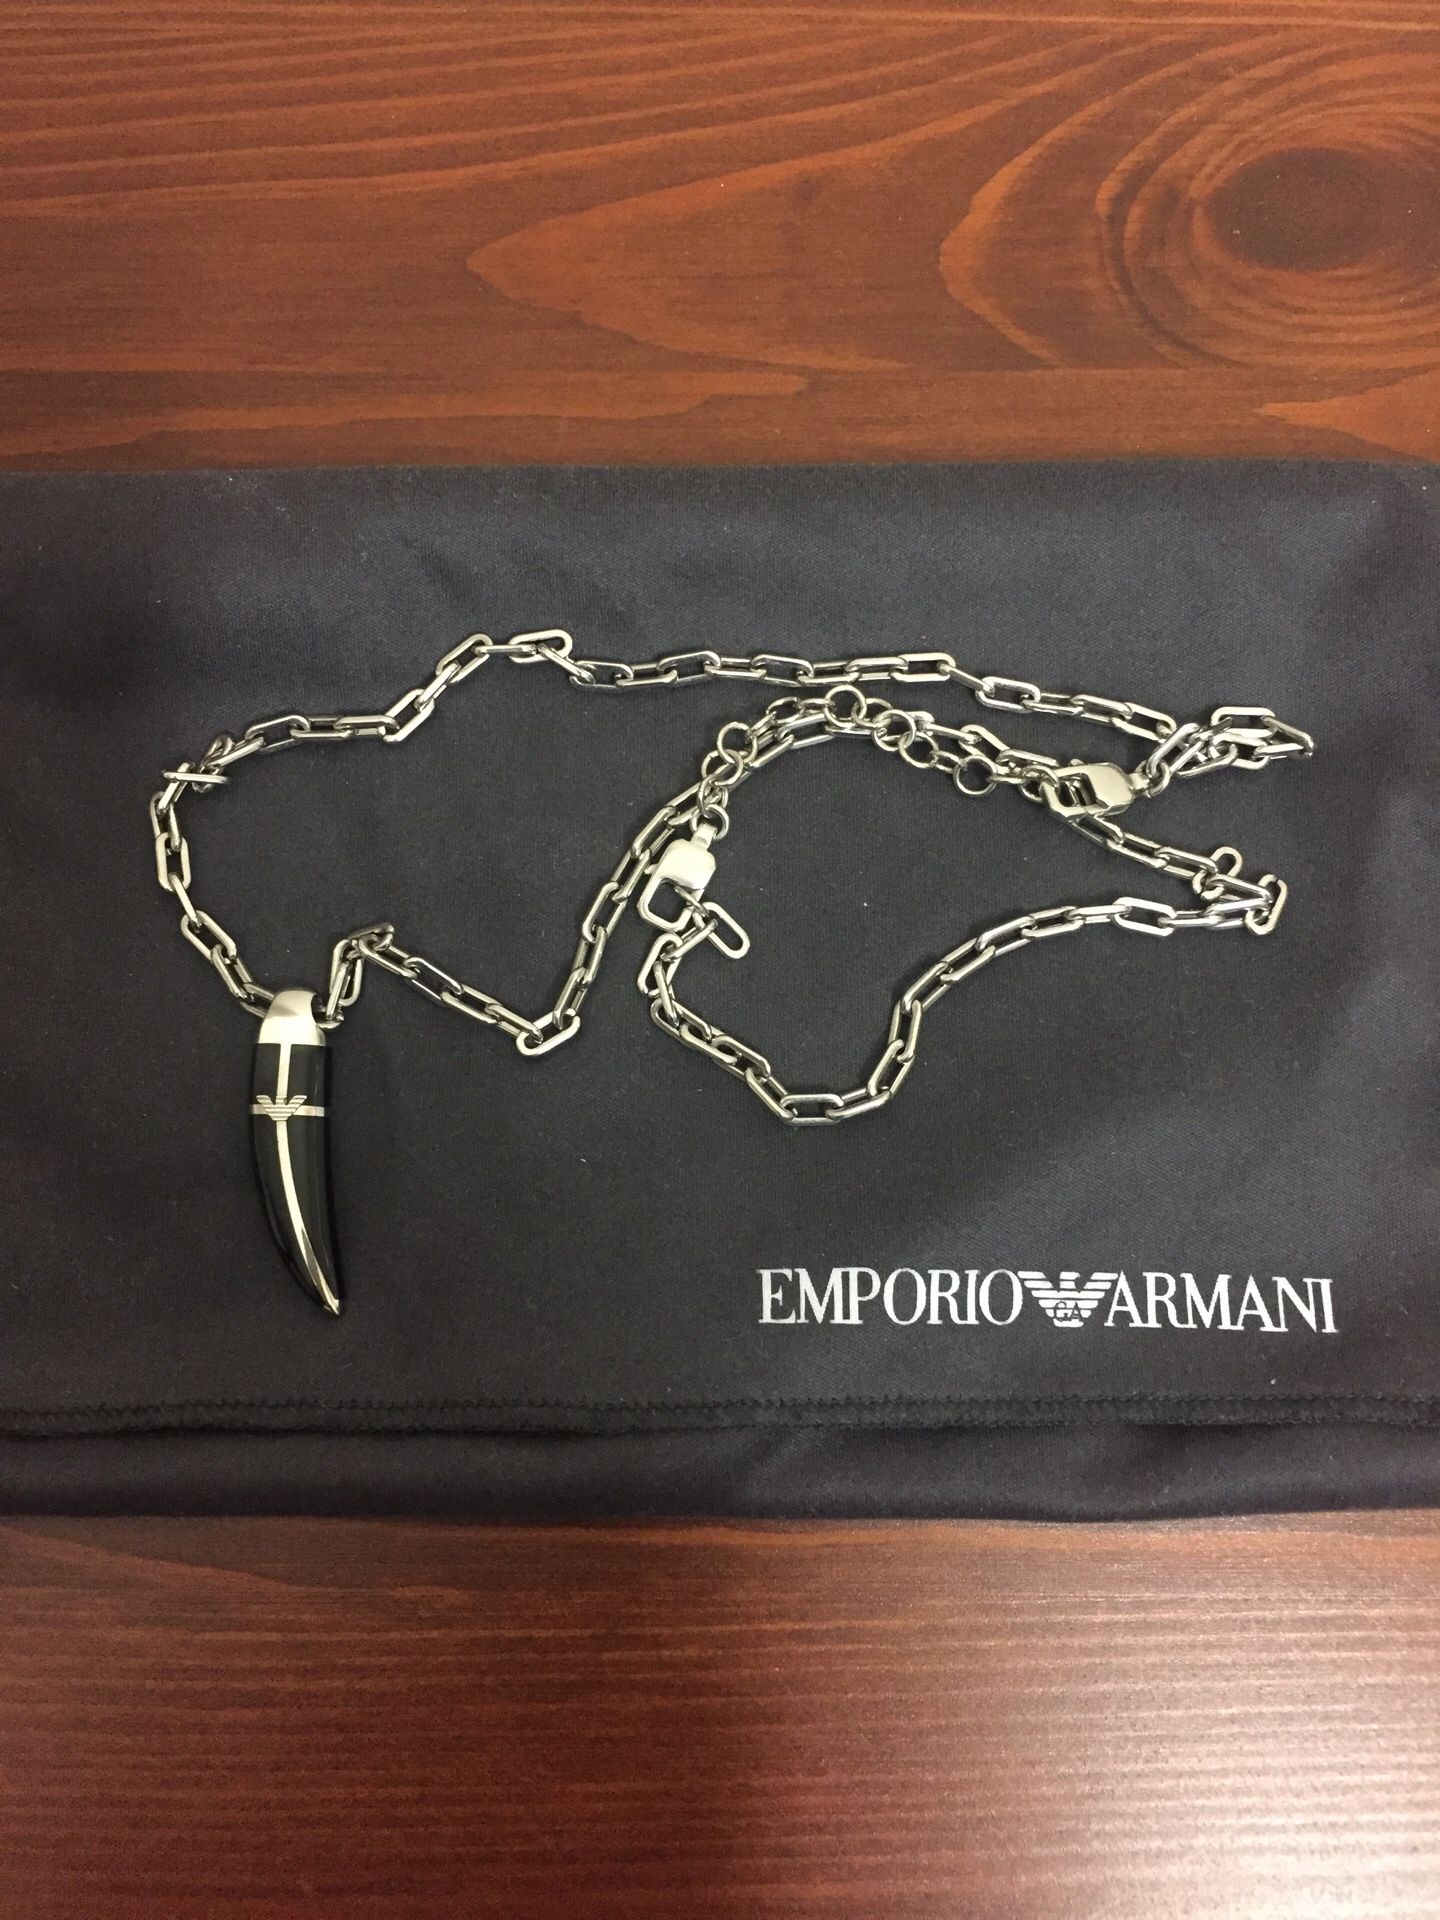 Emporio Armani necklace